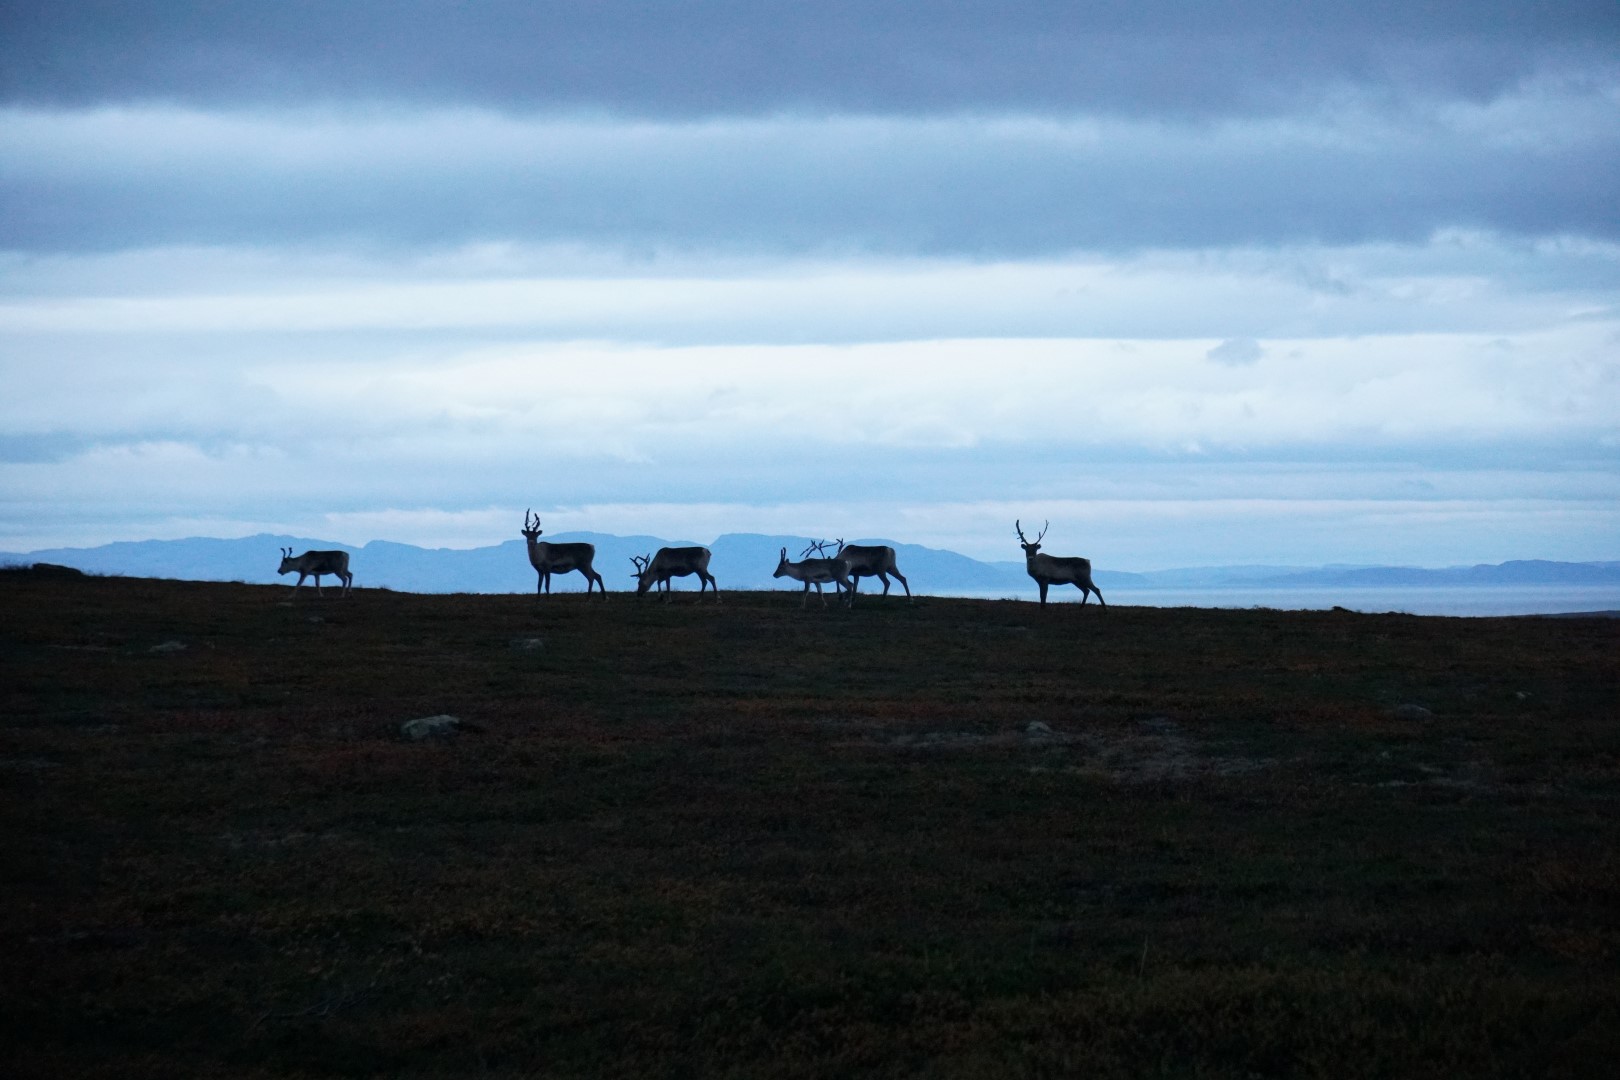 living wiwth sami reindeer herders